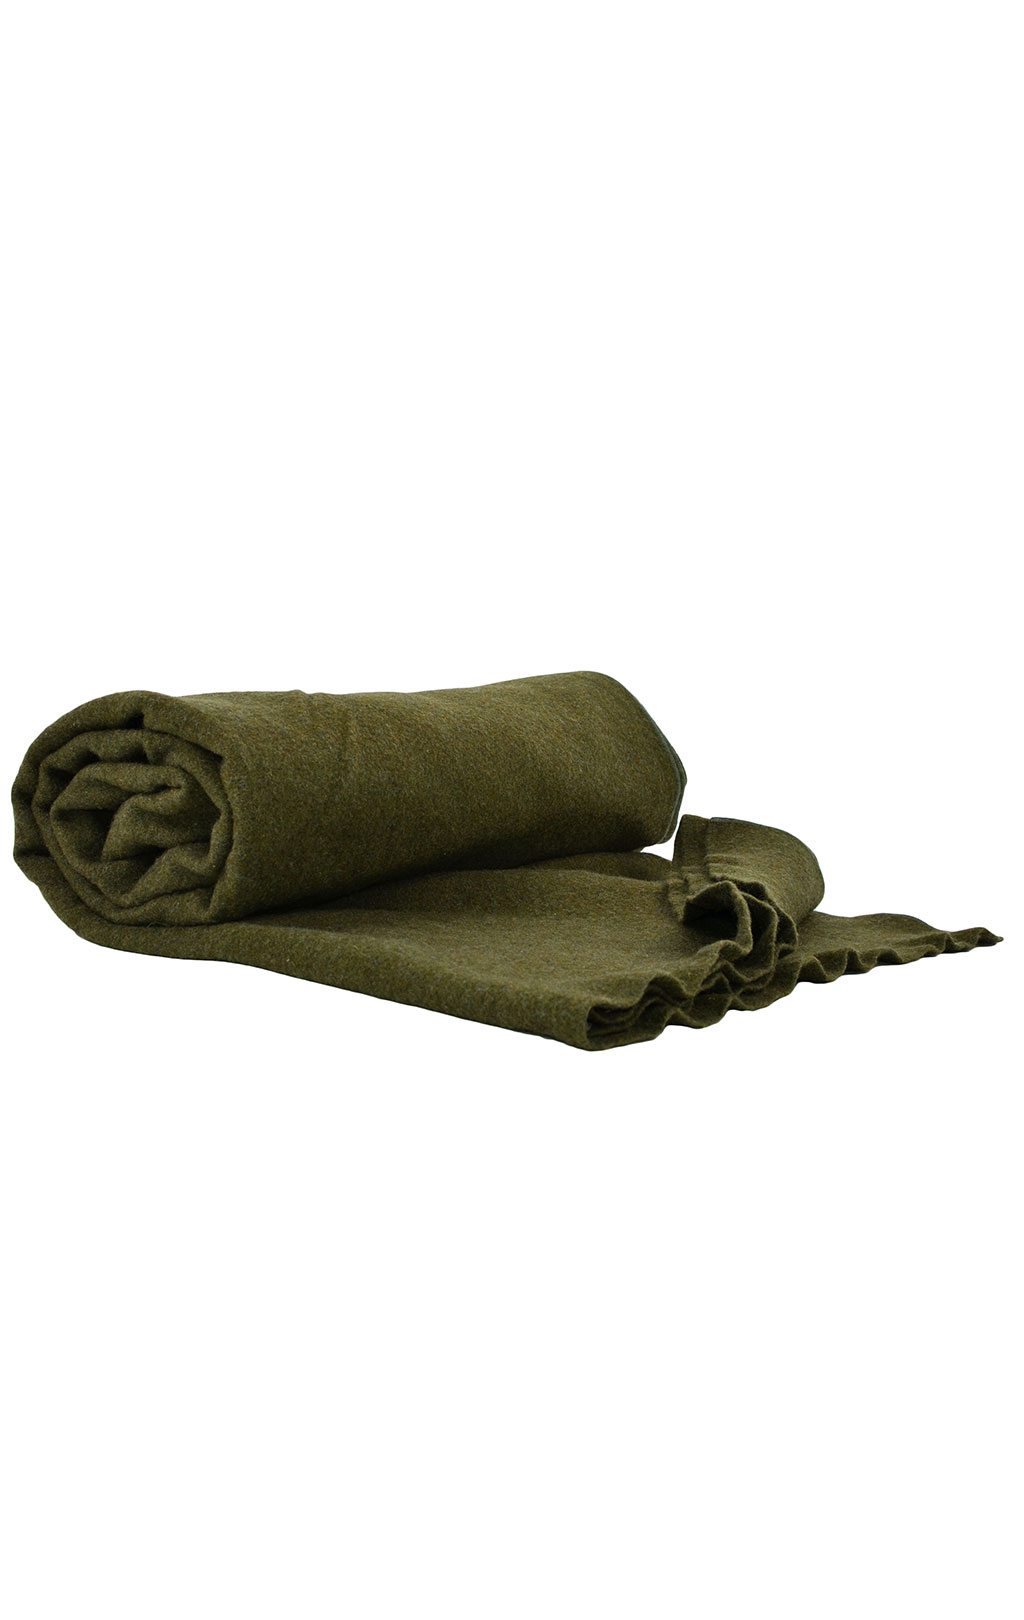 Одеяло армейское шерсть olive б/у США